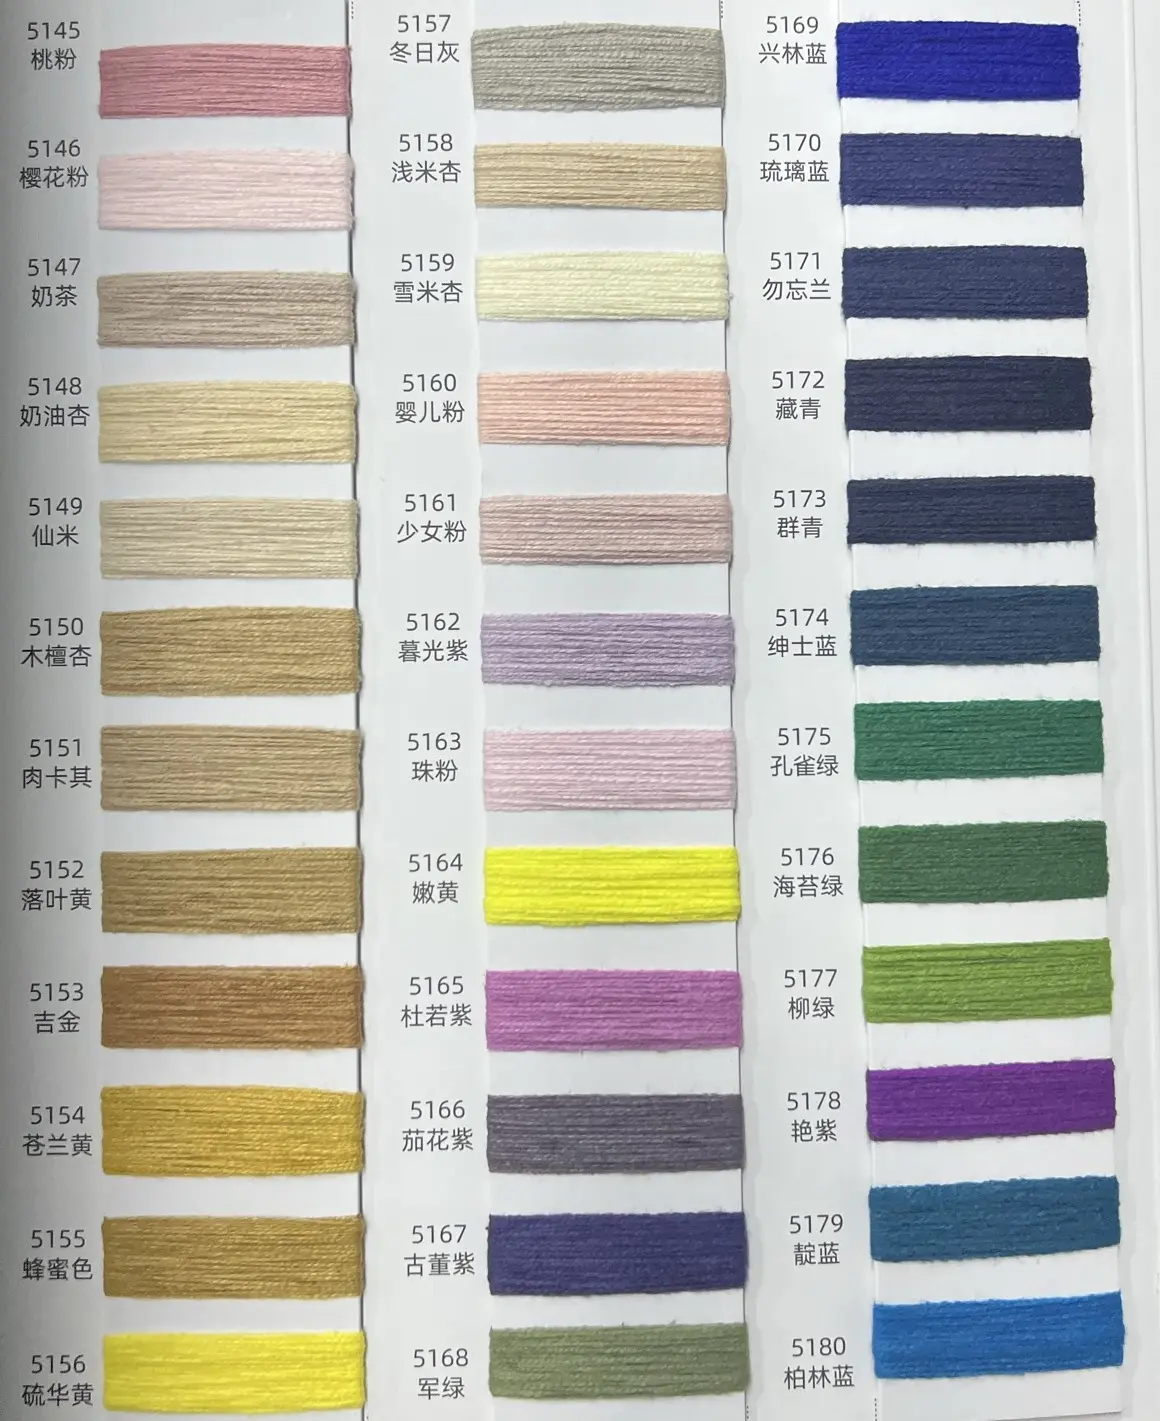 60% algodón 40% fibra acrílica a granel 16S/2 hilo teñido con más de 200 colores productos listos para elegir